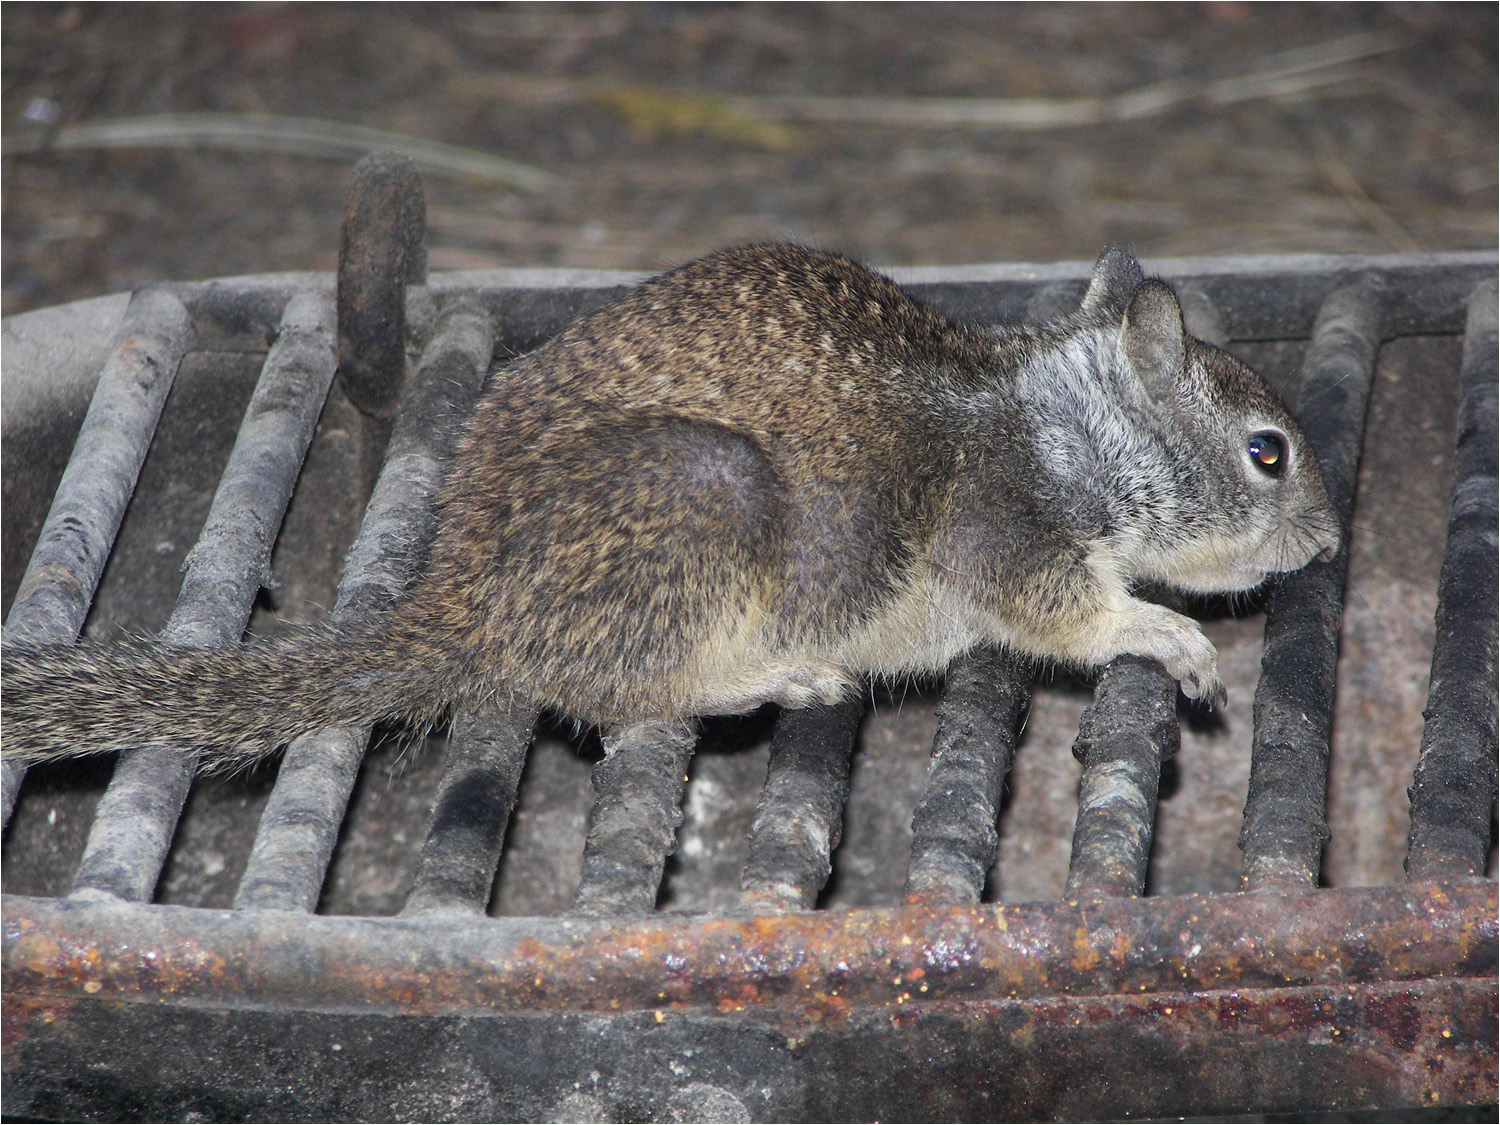 Housekeeping squirrel